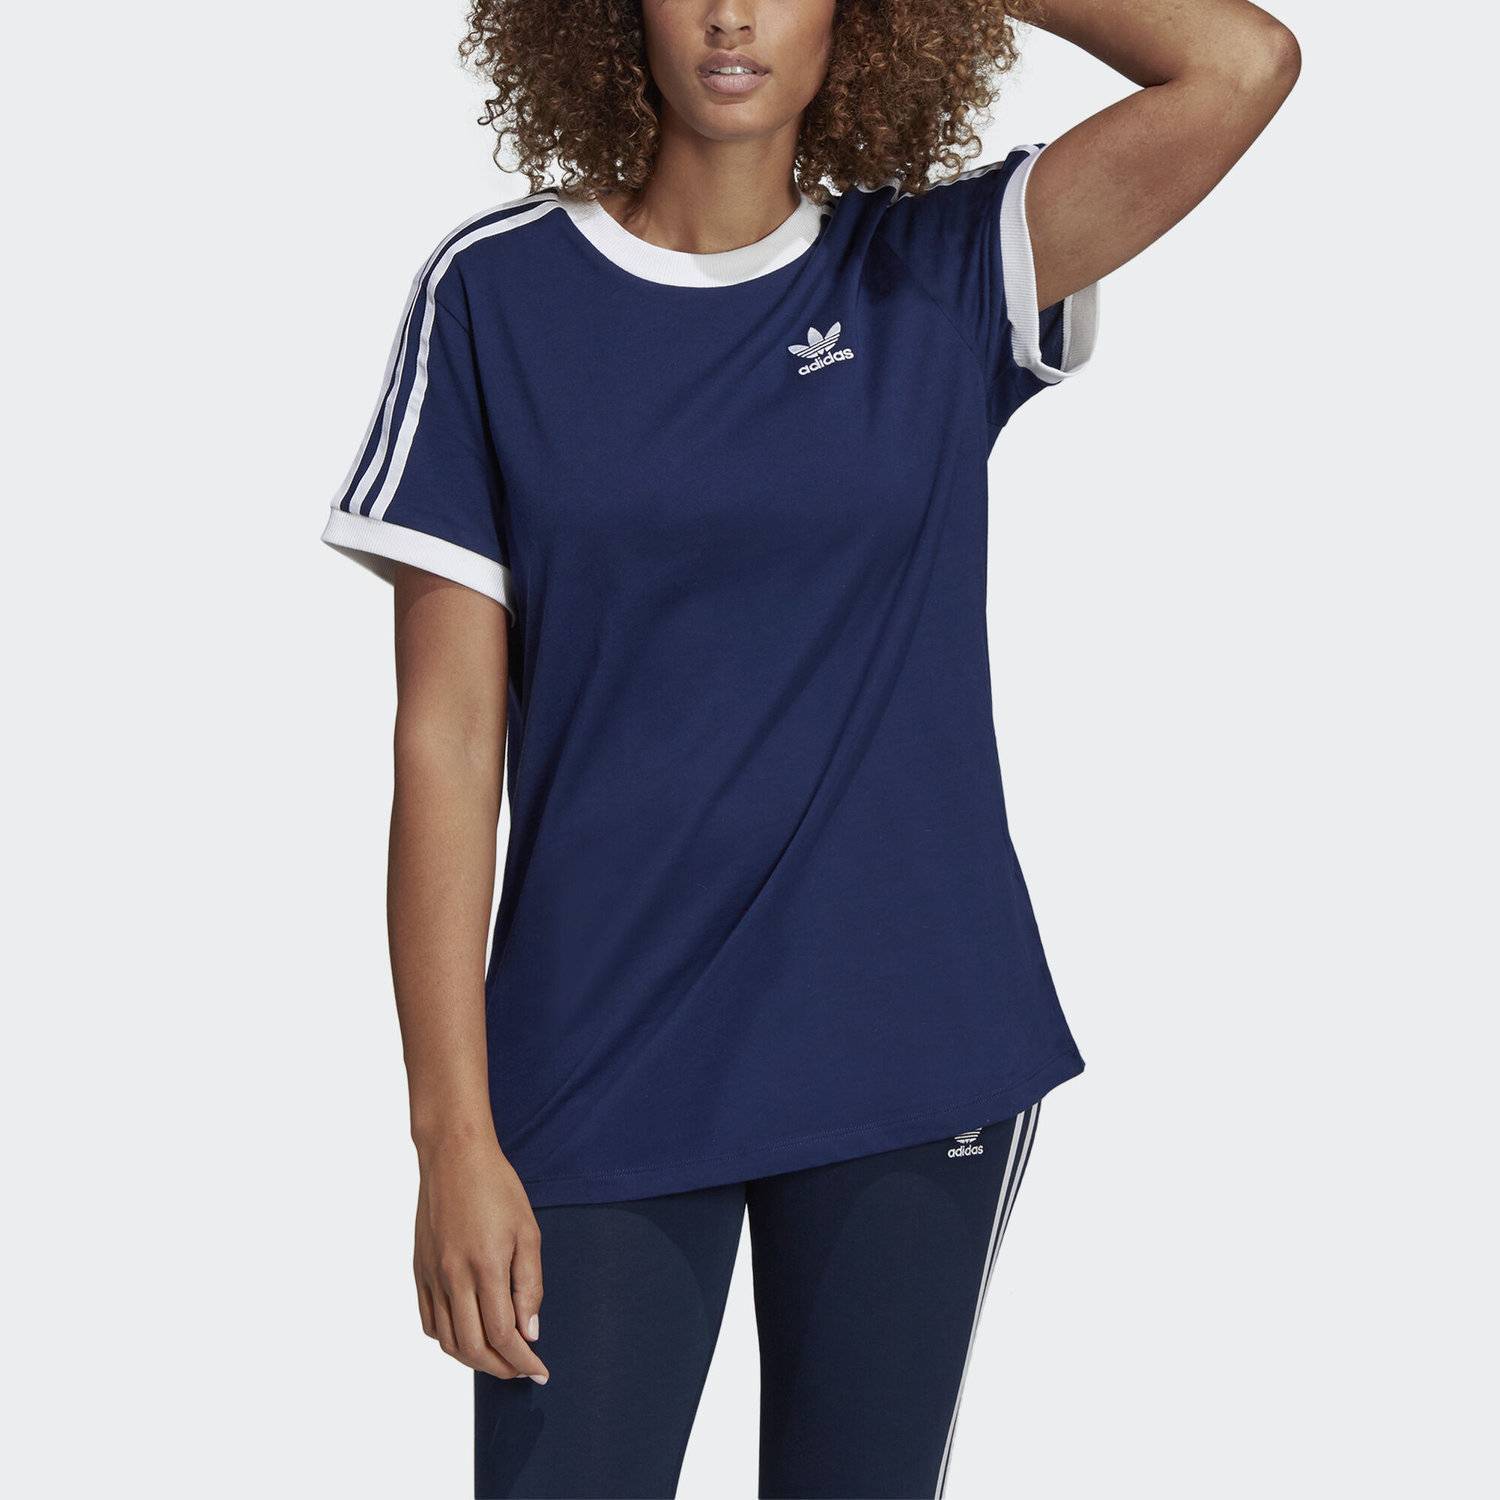 Голубой адидас женские. Adidas Originals Farrell футболка женская синяя. Adidas 3 Stripes футболка женская. Женская adidas 3 Stripes Original. Adidas Original Dark Blue three Stripes футболка.